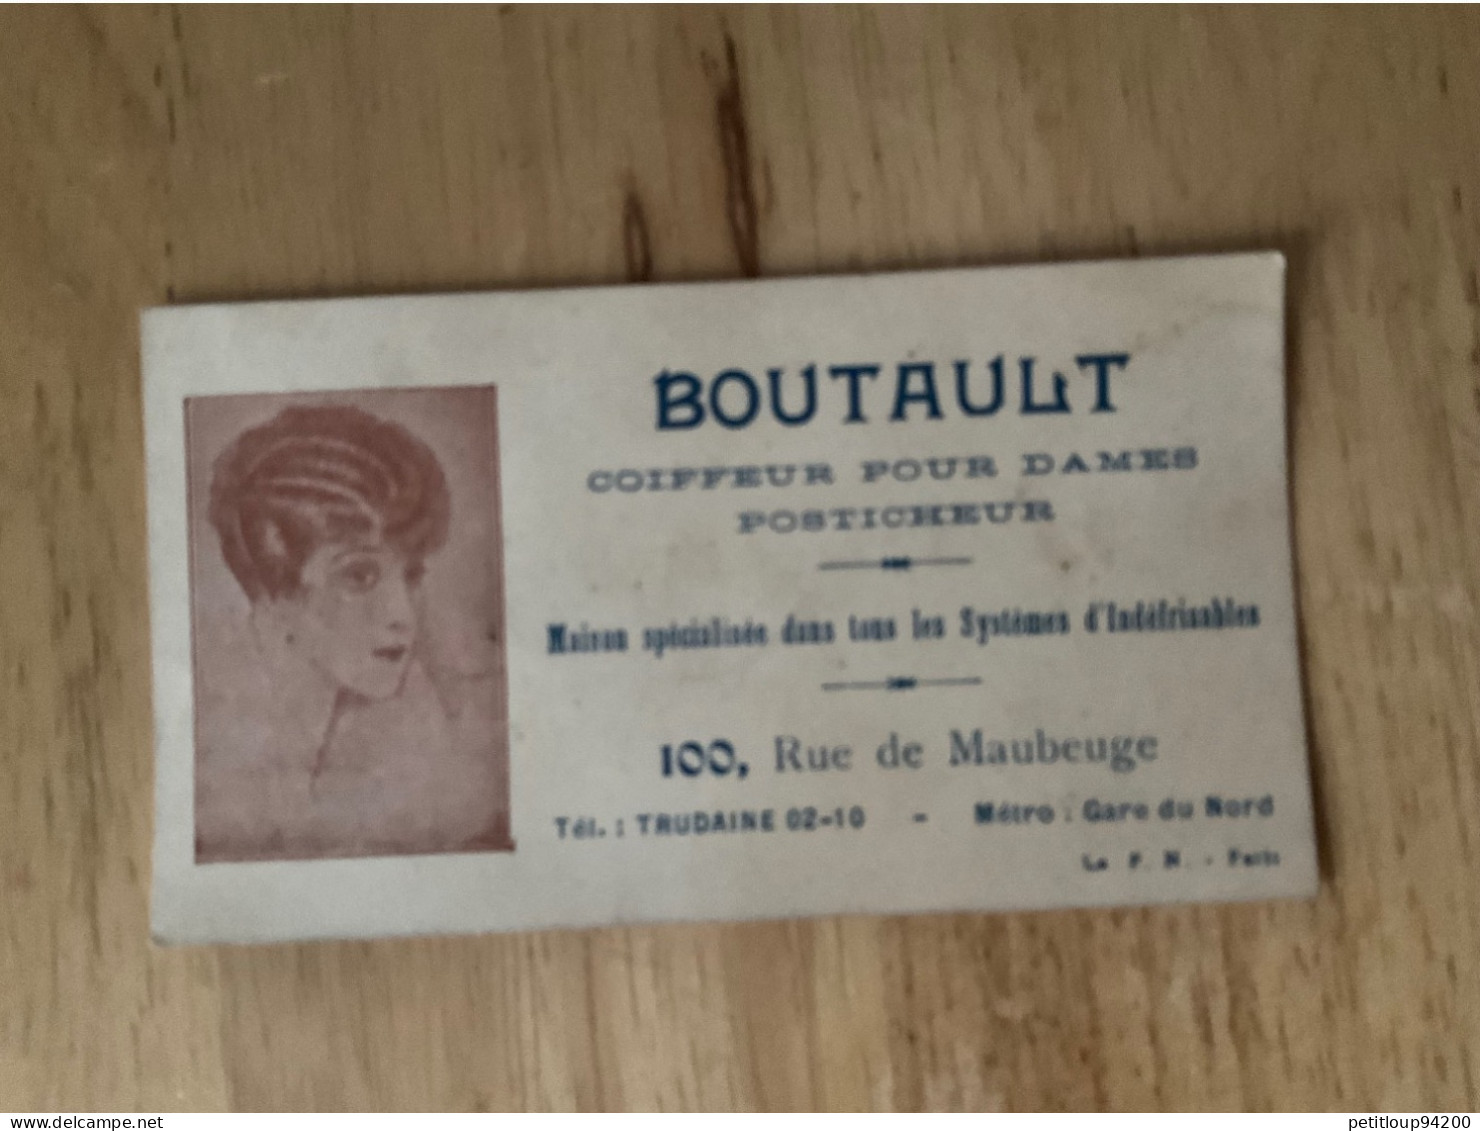 CARTE DE VISITE Coiffeur Pour Dames  Posticheur  BOUTAULT  Paris - Visitekaartjes